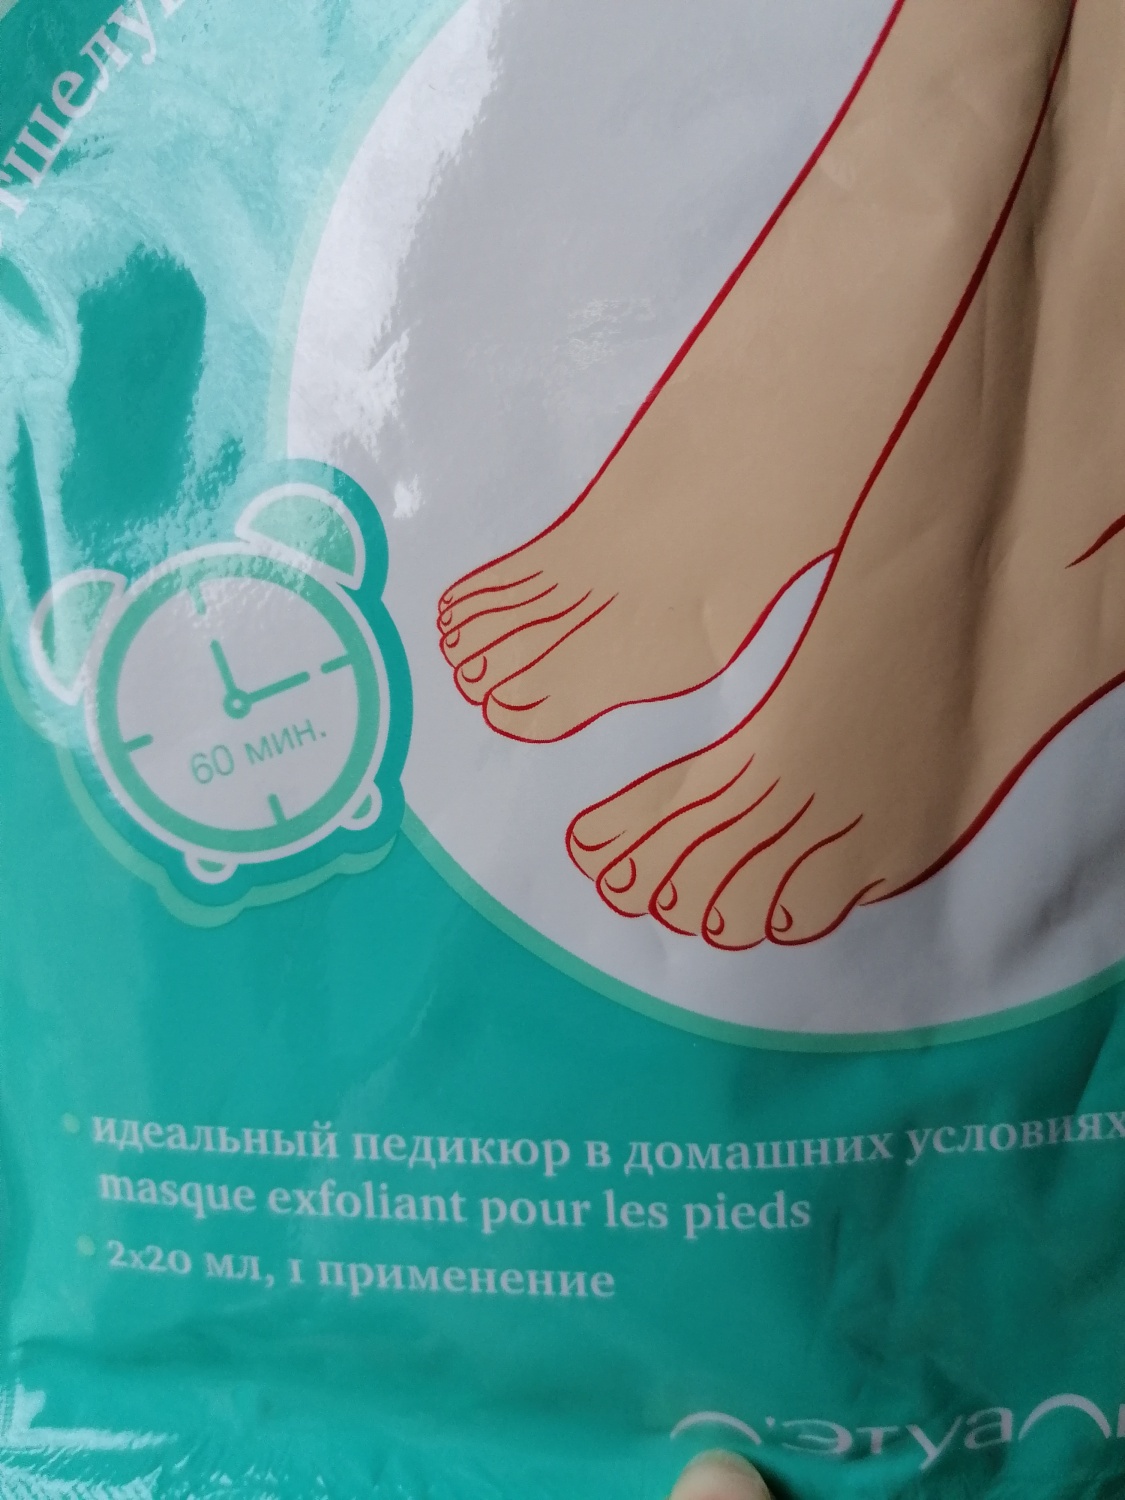 Корейские пилинг-носочки — отличное средство для ухода за ногами в домашних условиях